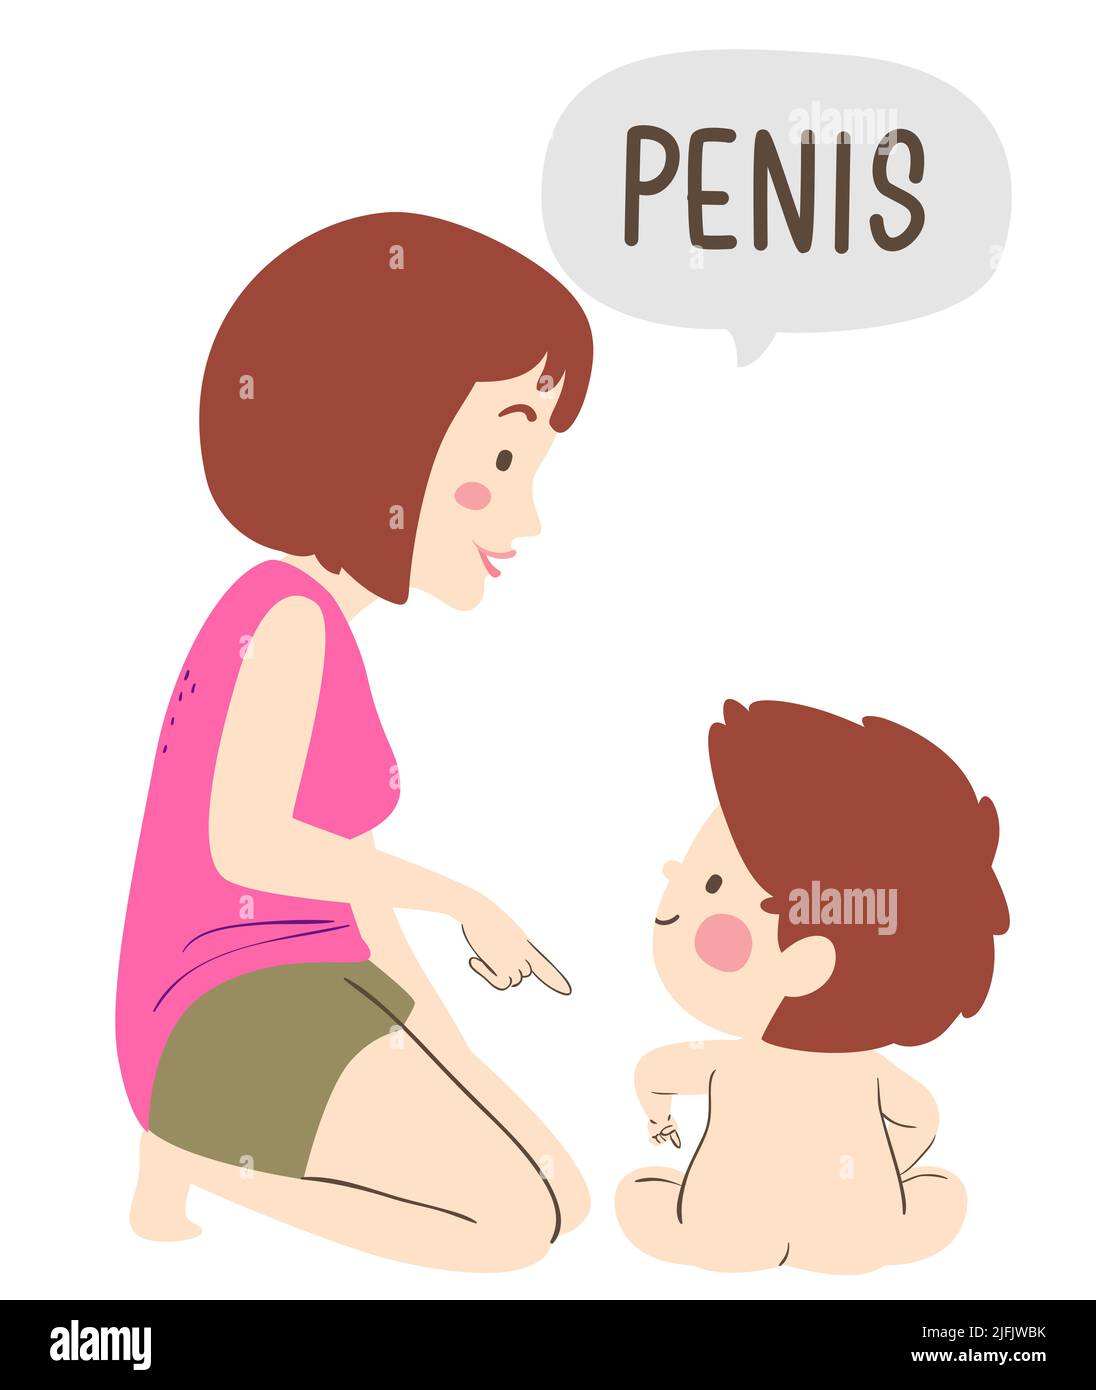 Ilustración de Kid Boy sentado apuntando a su parte privada del cuerpo, Mamá señalando y diciendo el pene Foto de stock